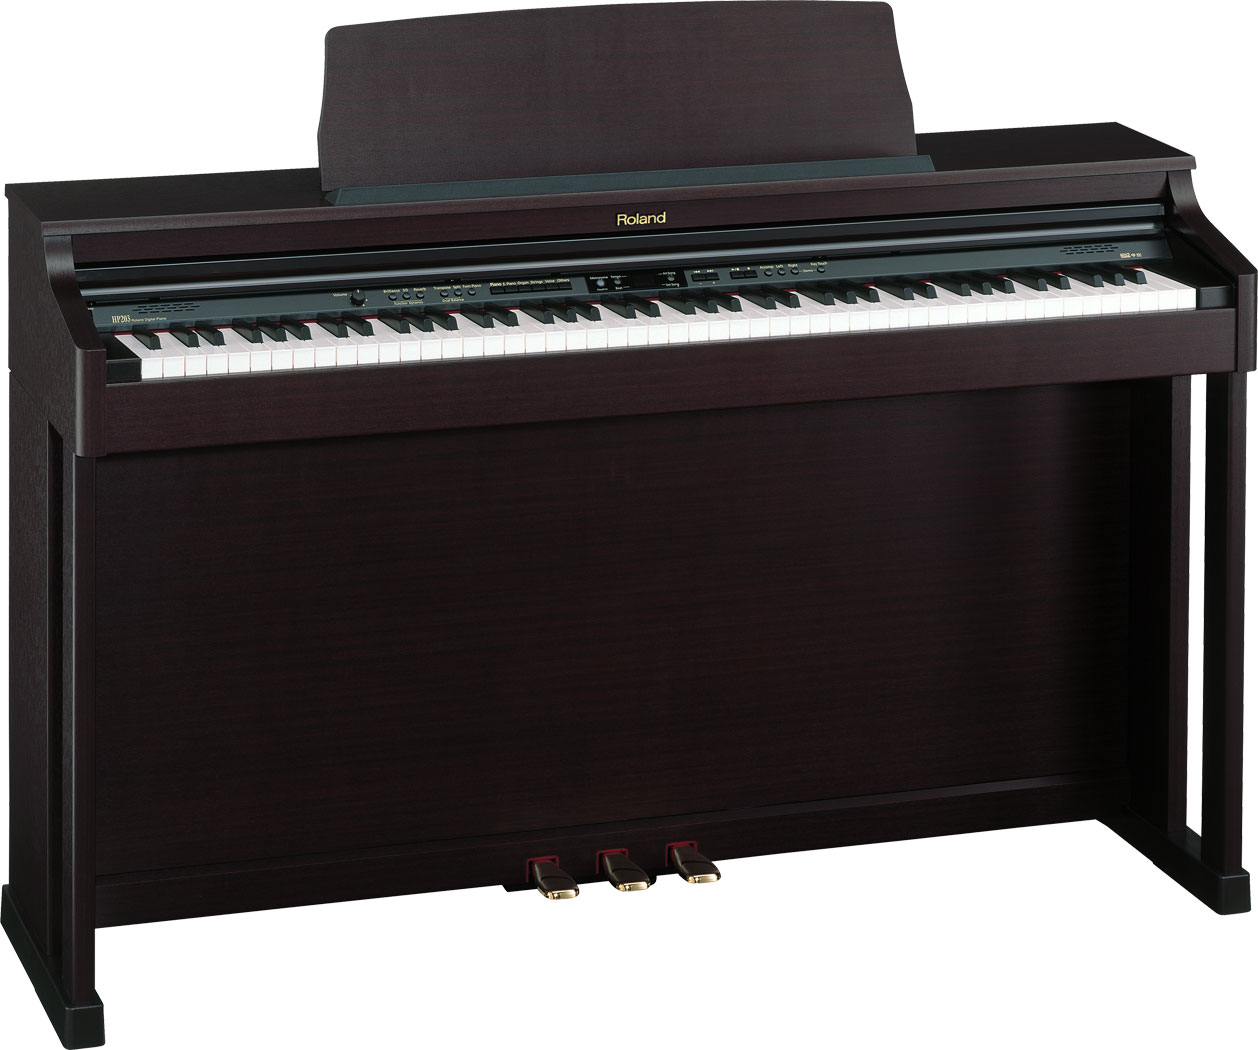 赤字超特価SALERoland HP203-MHS 鍵盤楽器